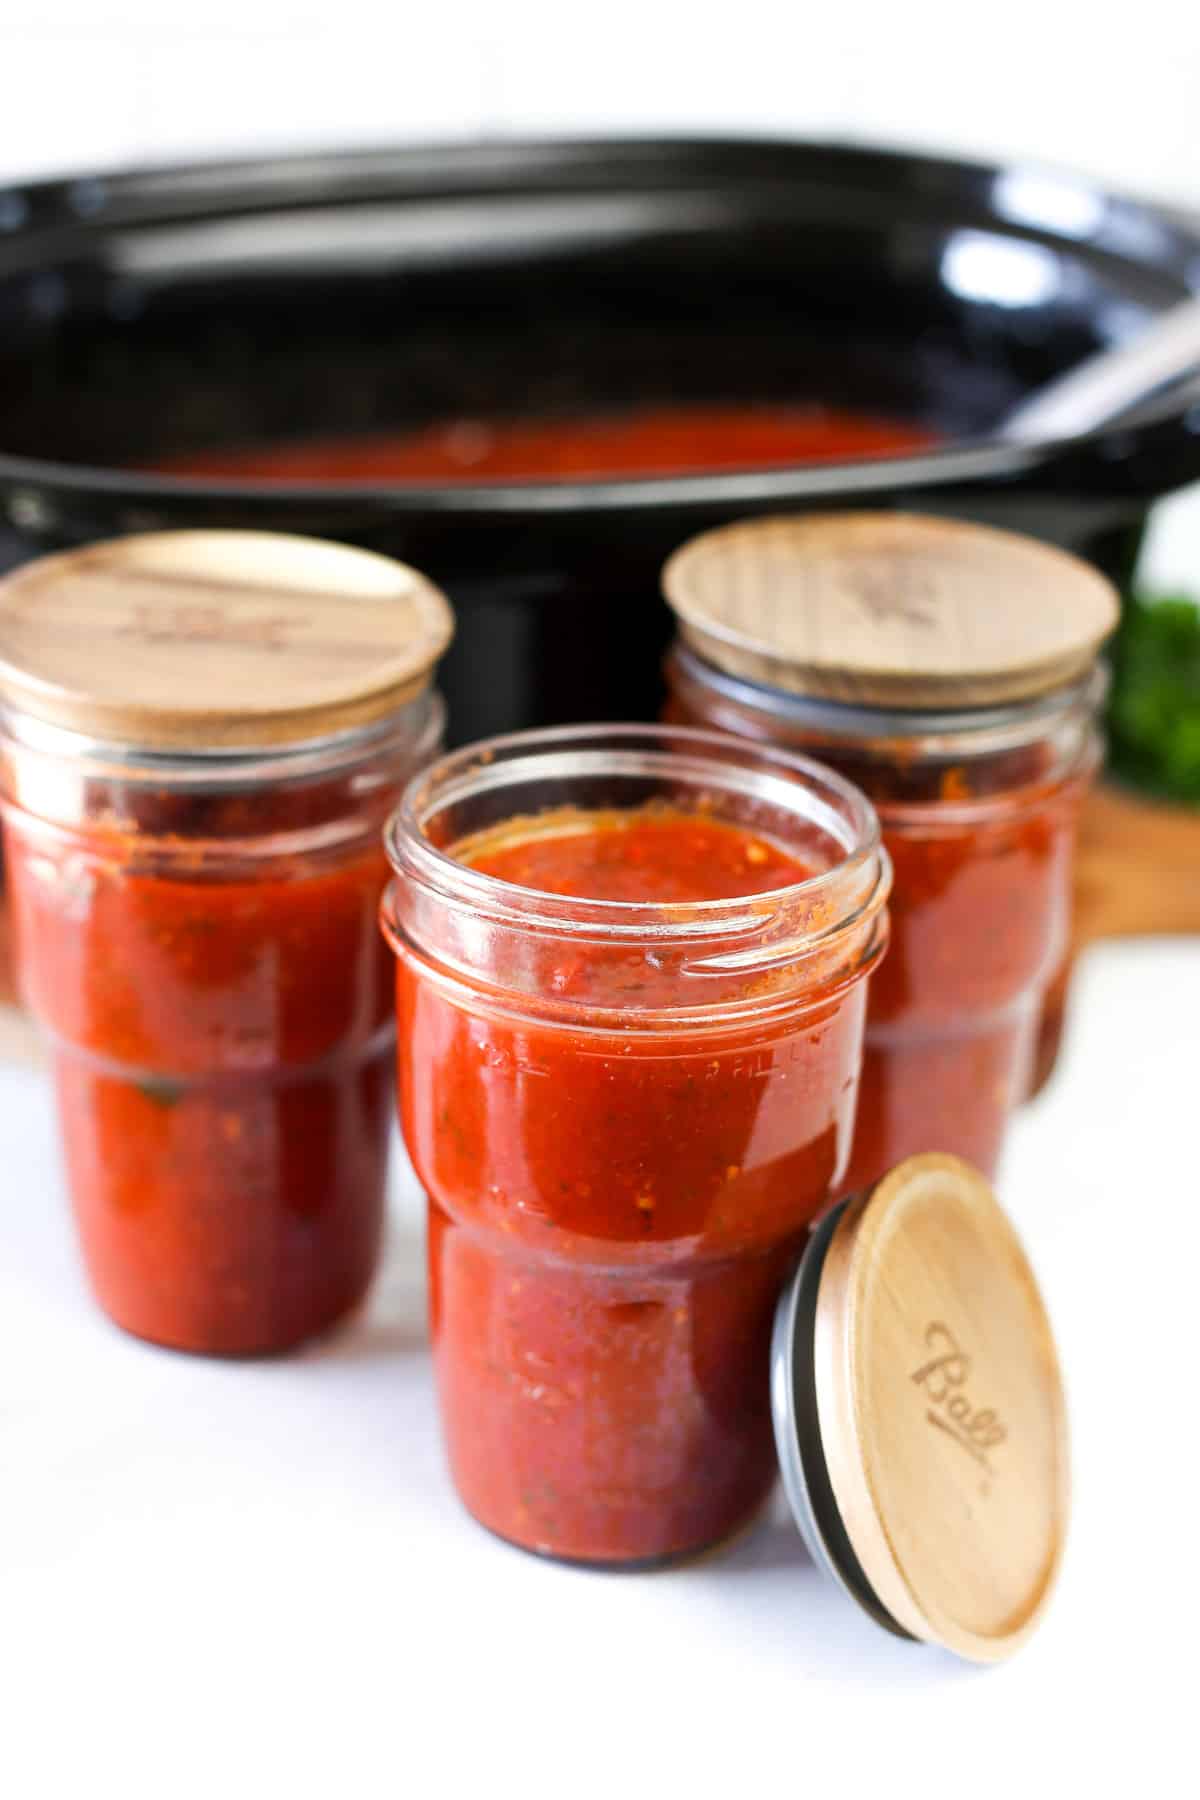 Homemade marinara sauce in mason jars.